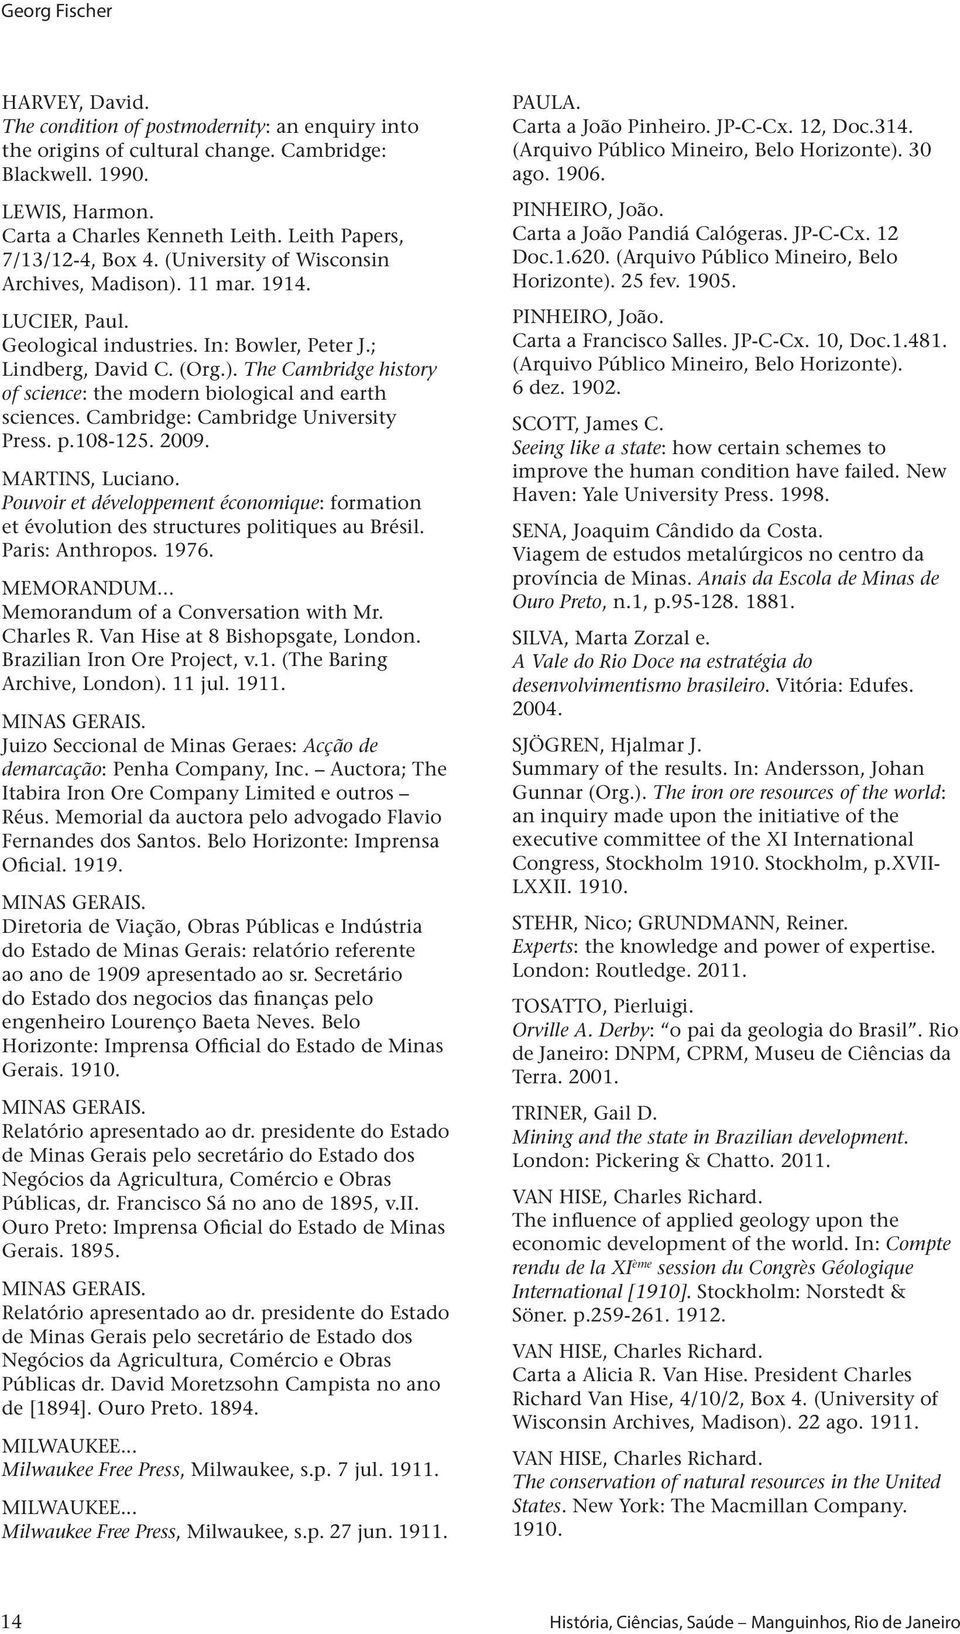 Cambridge: Cambridge University Press. p.108-125. 2009. Martins, Luciano. Pouvoir et développement économique: formation et évolution des structures politiques au Brésil. Paris: Anthropos. 1976.